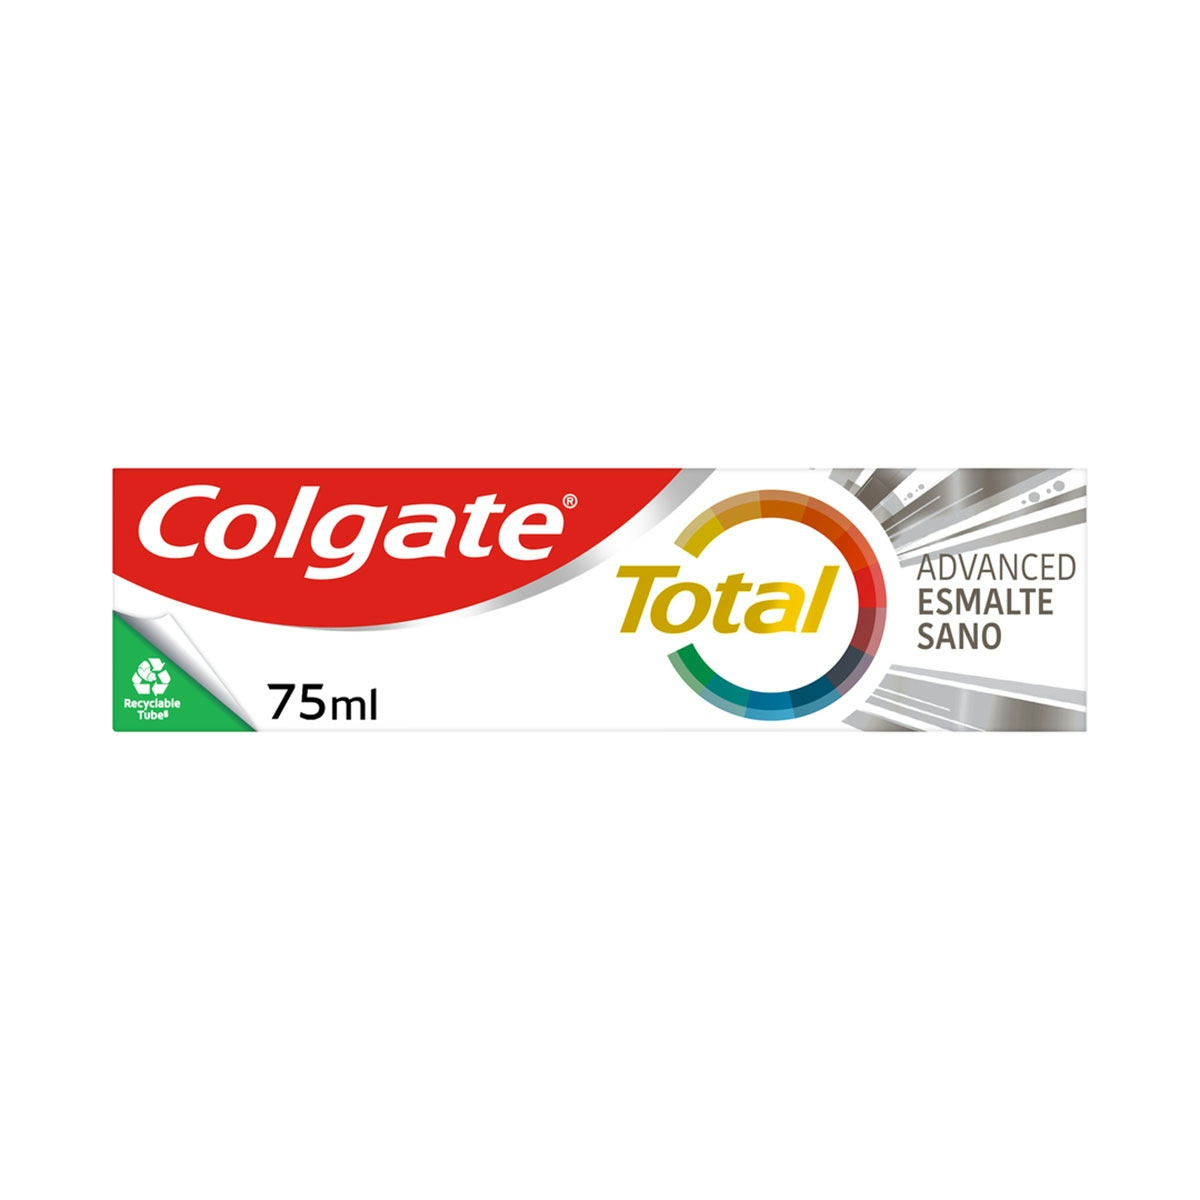 Pasta de dientes  Colgate Total Advanced Esmalte Sano 24h de protección completa 75ml